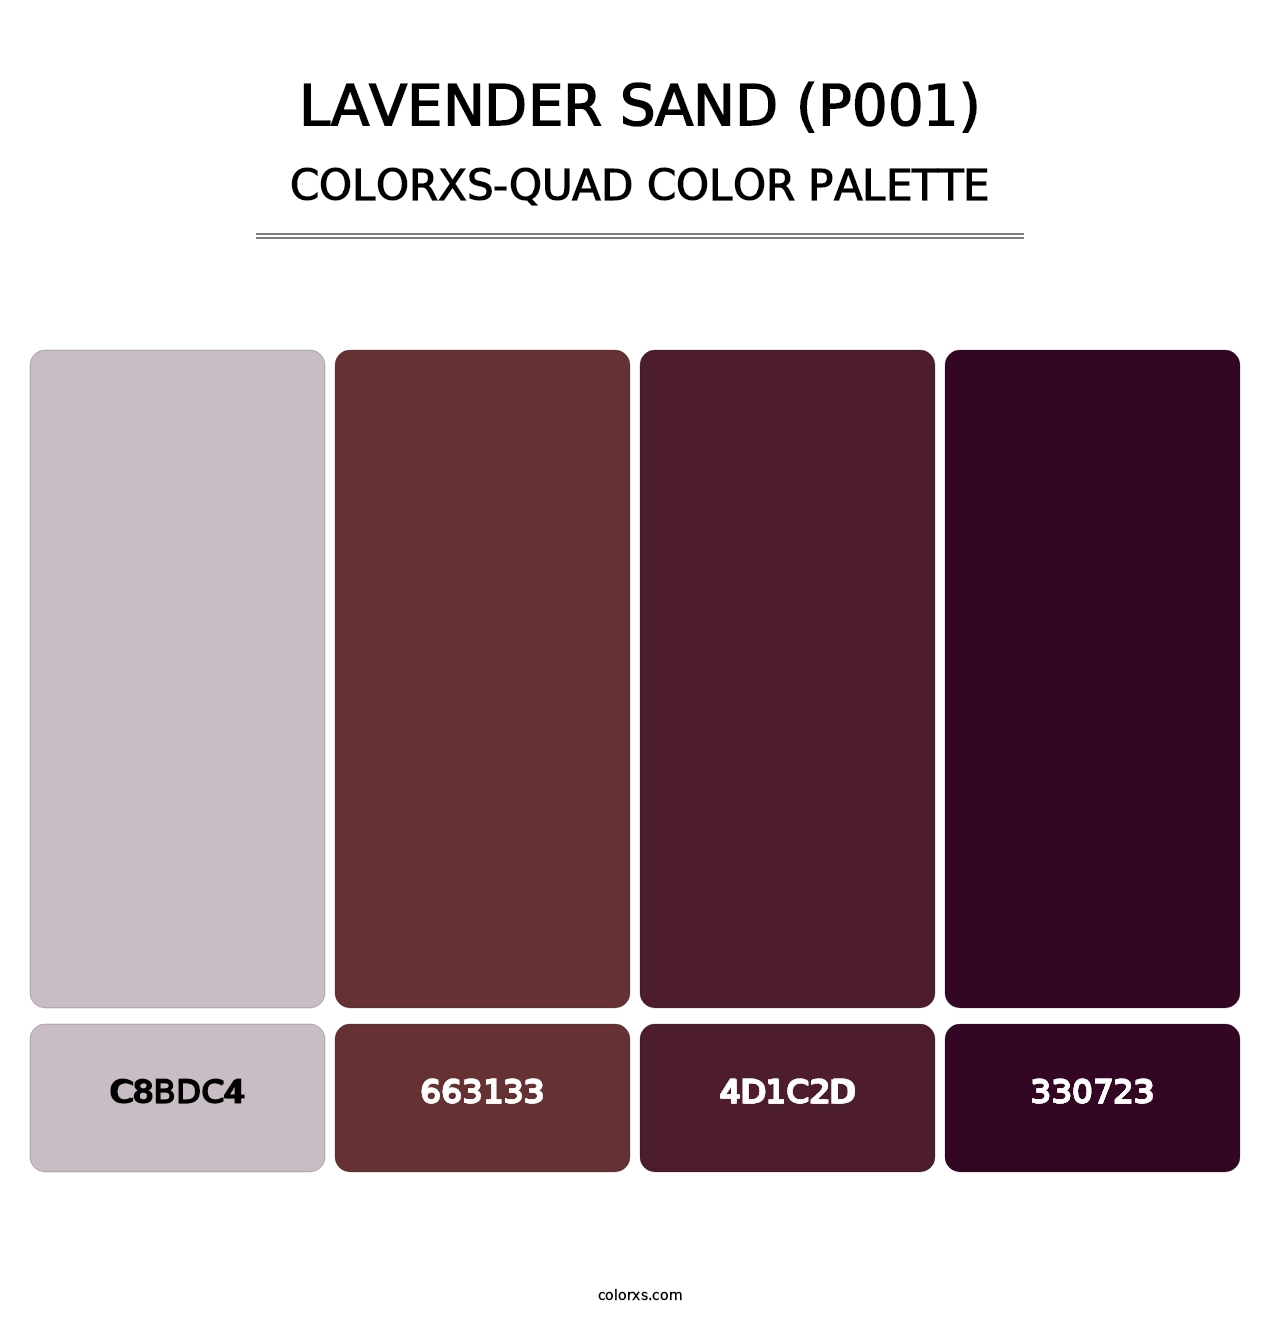 Lavender Sand (P001) - Colorxs Quad Palette